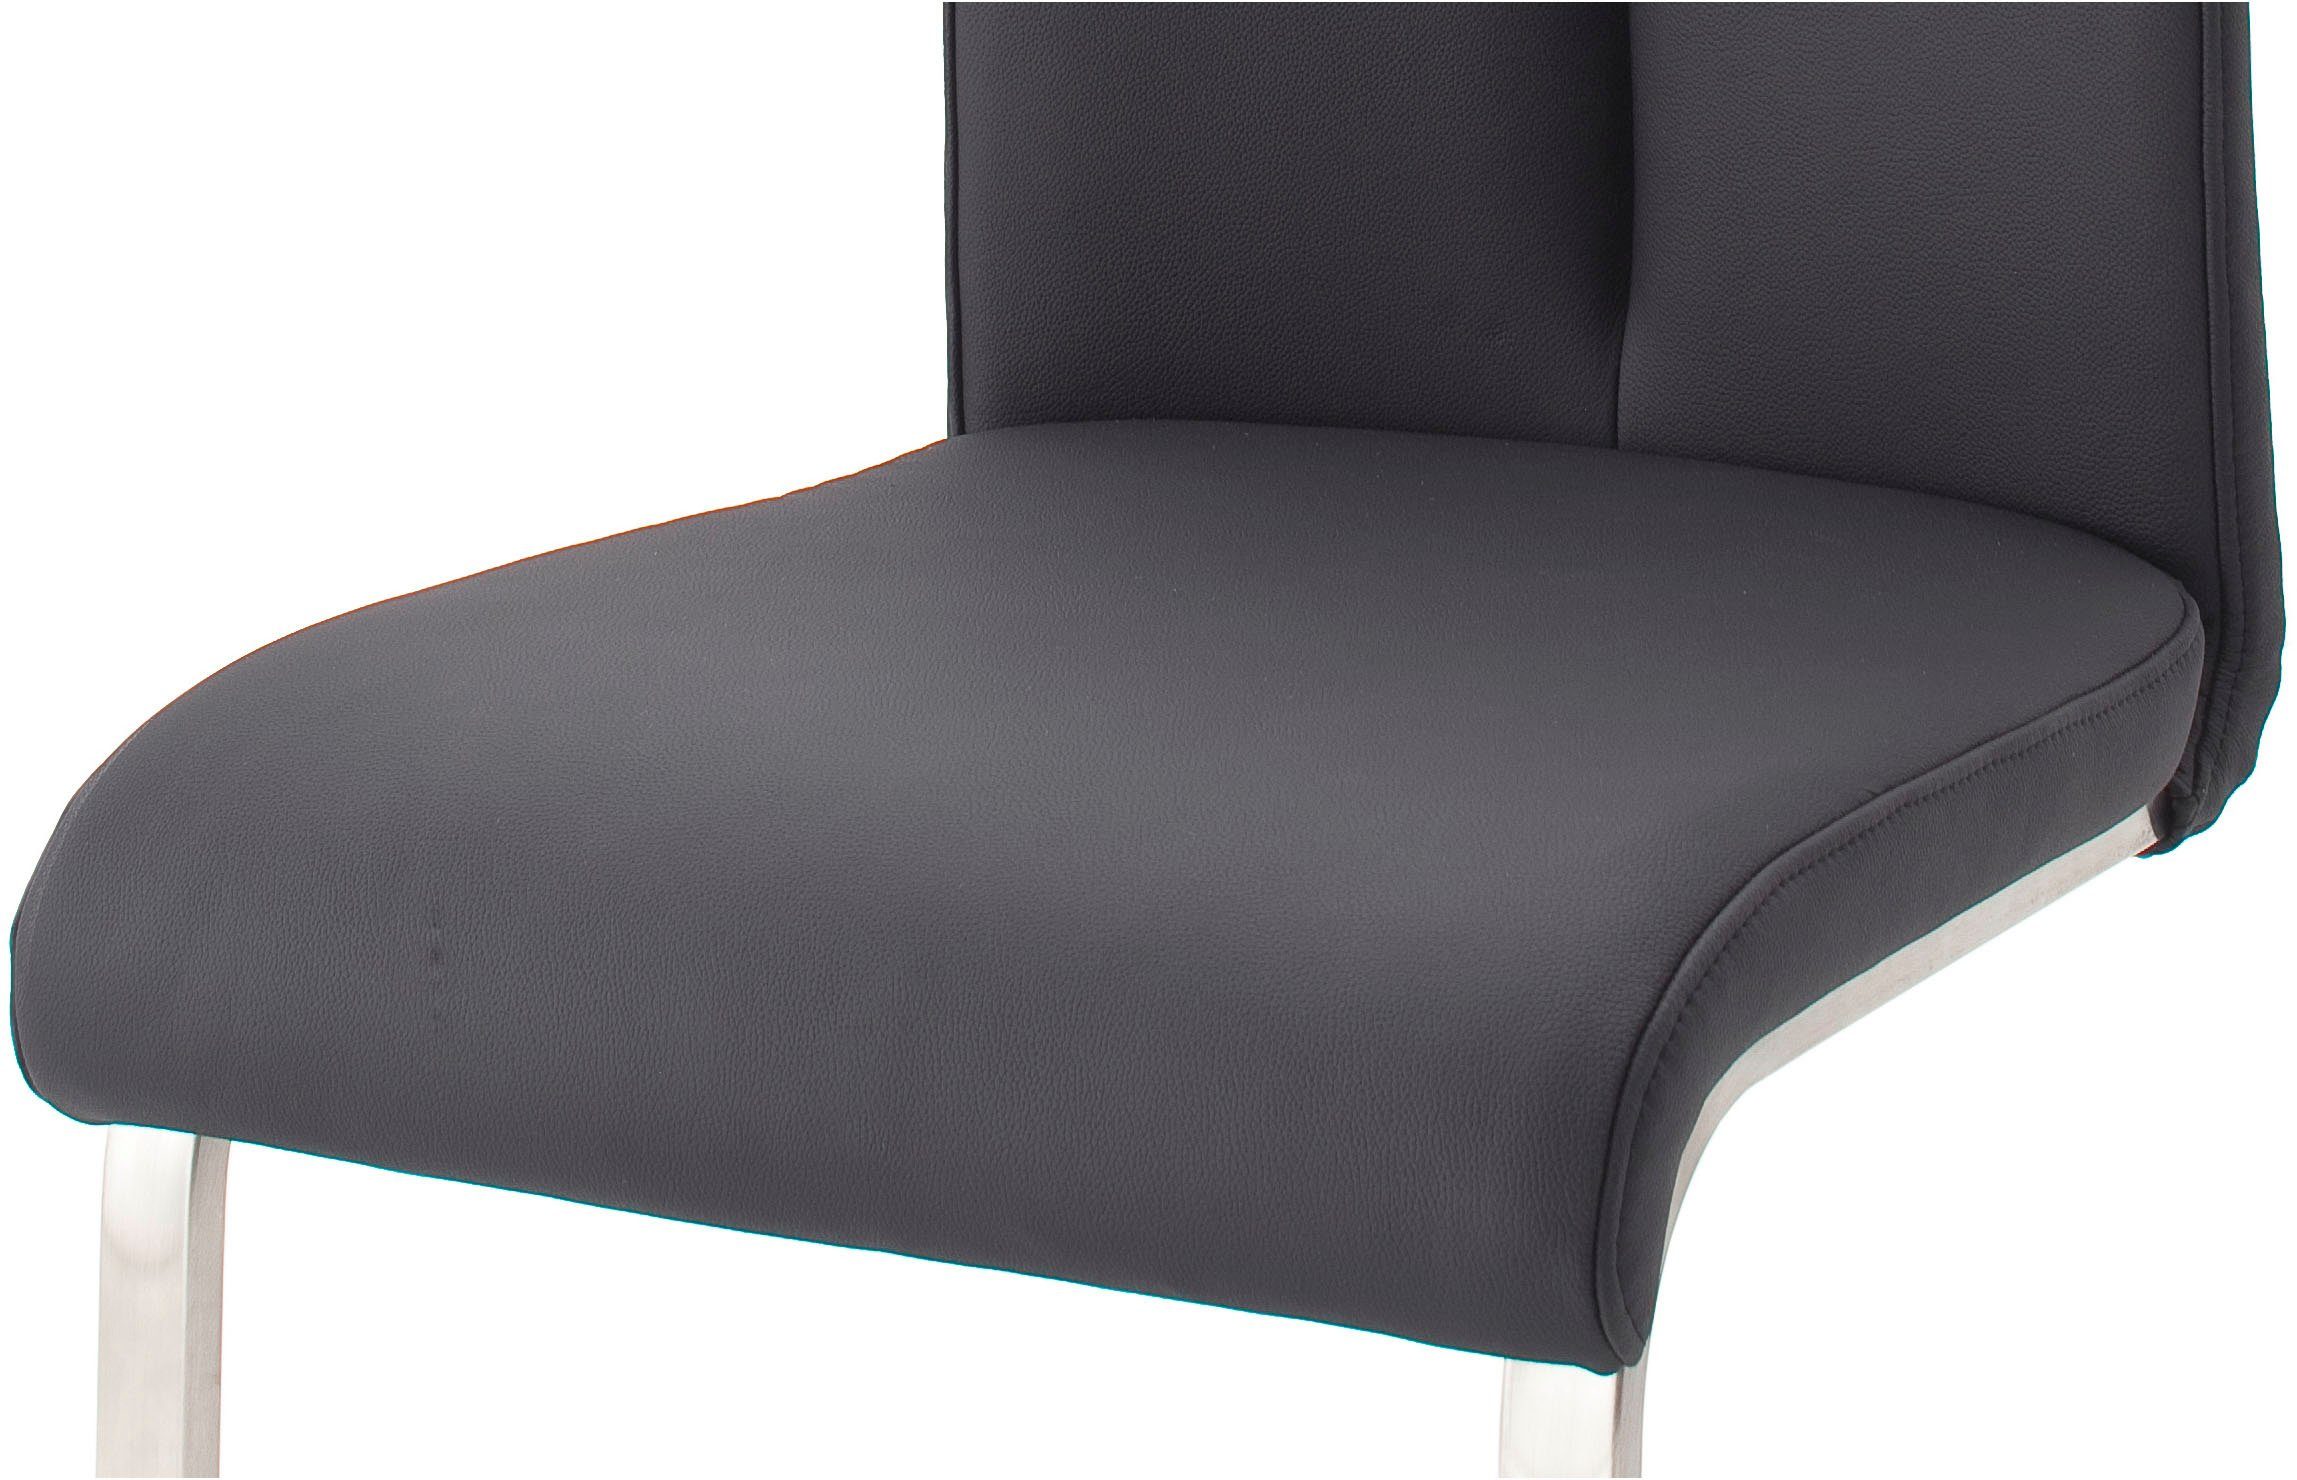 MCA furniture Freischwinger Artos | Kg 140 Echtlederbezug, bis belastbar St), Schwarz/Edelstahl (Set, mit 2 Schwarz Stuhl